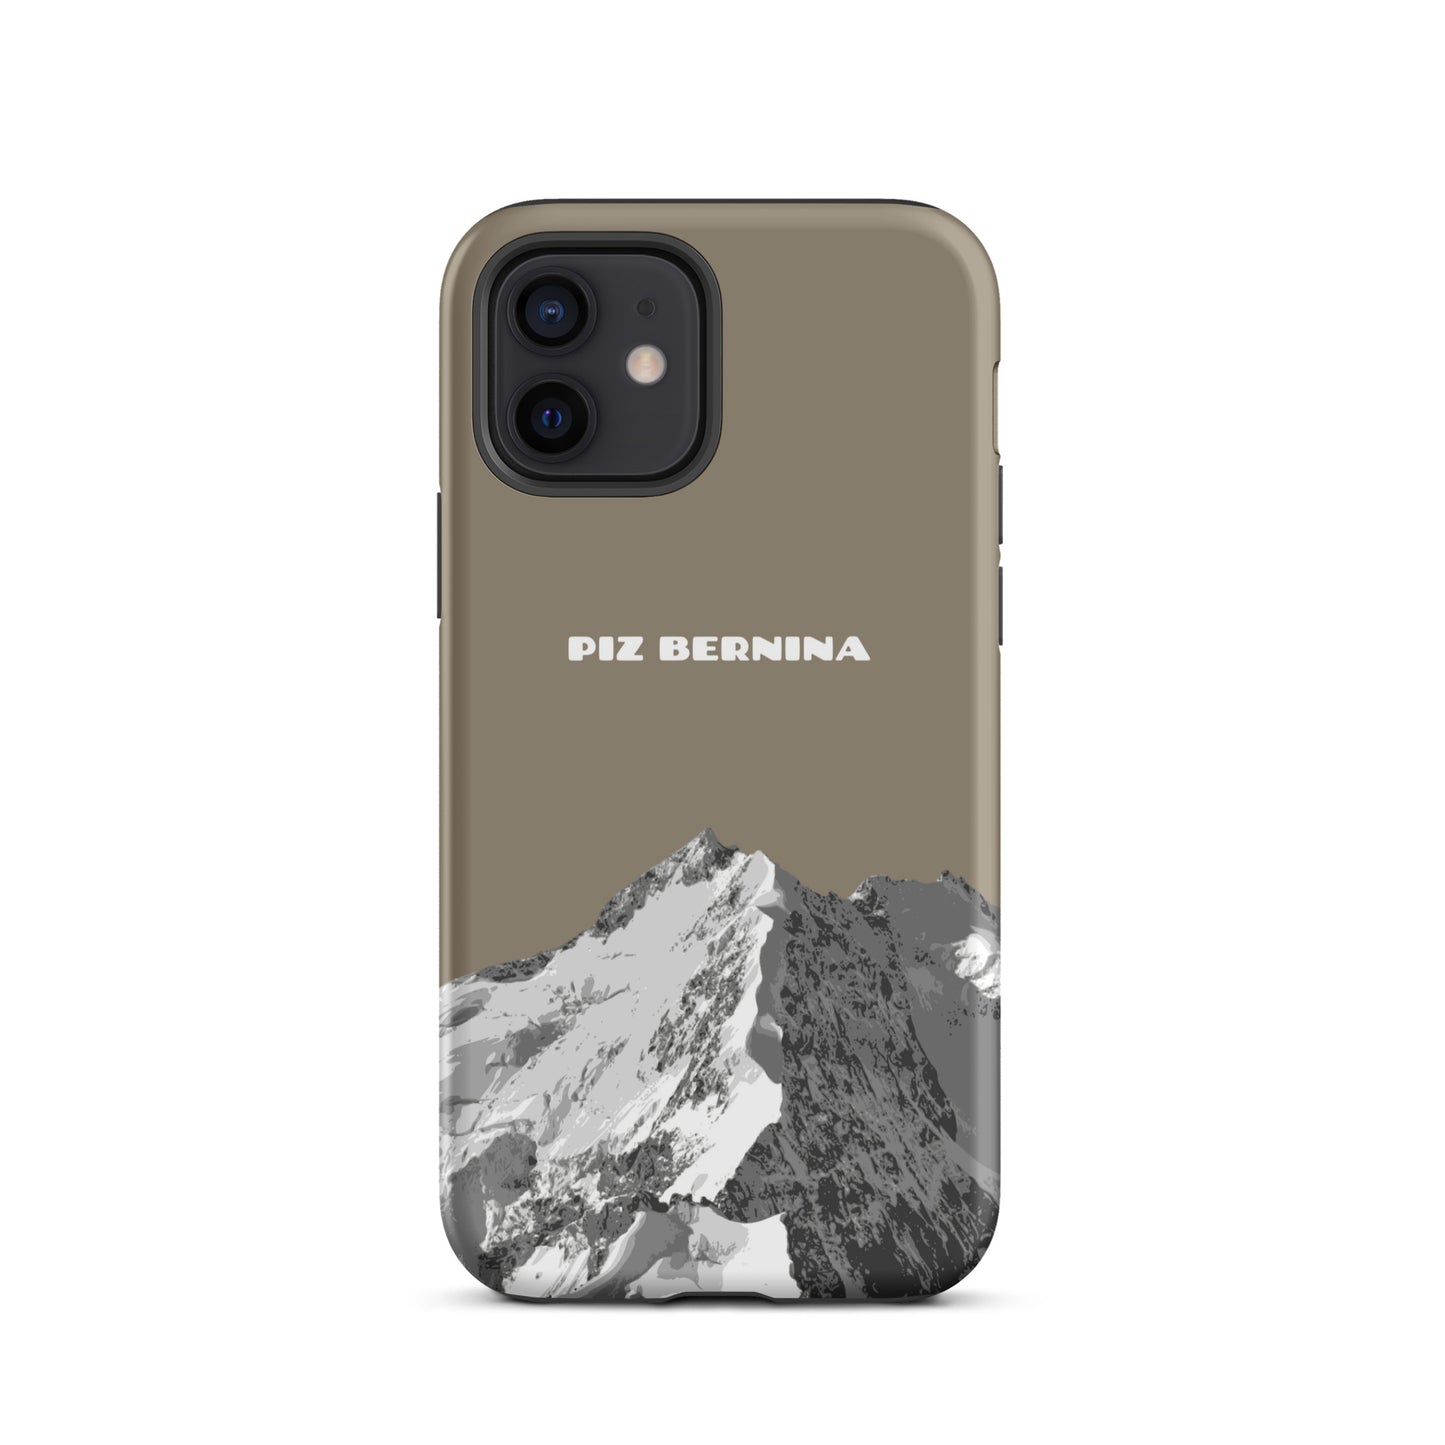 Hülle für das iPhone 12 von Apple in der Farbe Graubraun, dass den Piz Bernina in Graubünden zeigt.